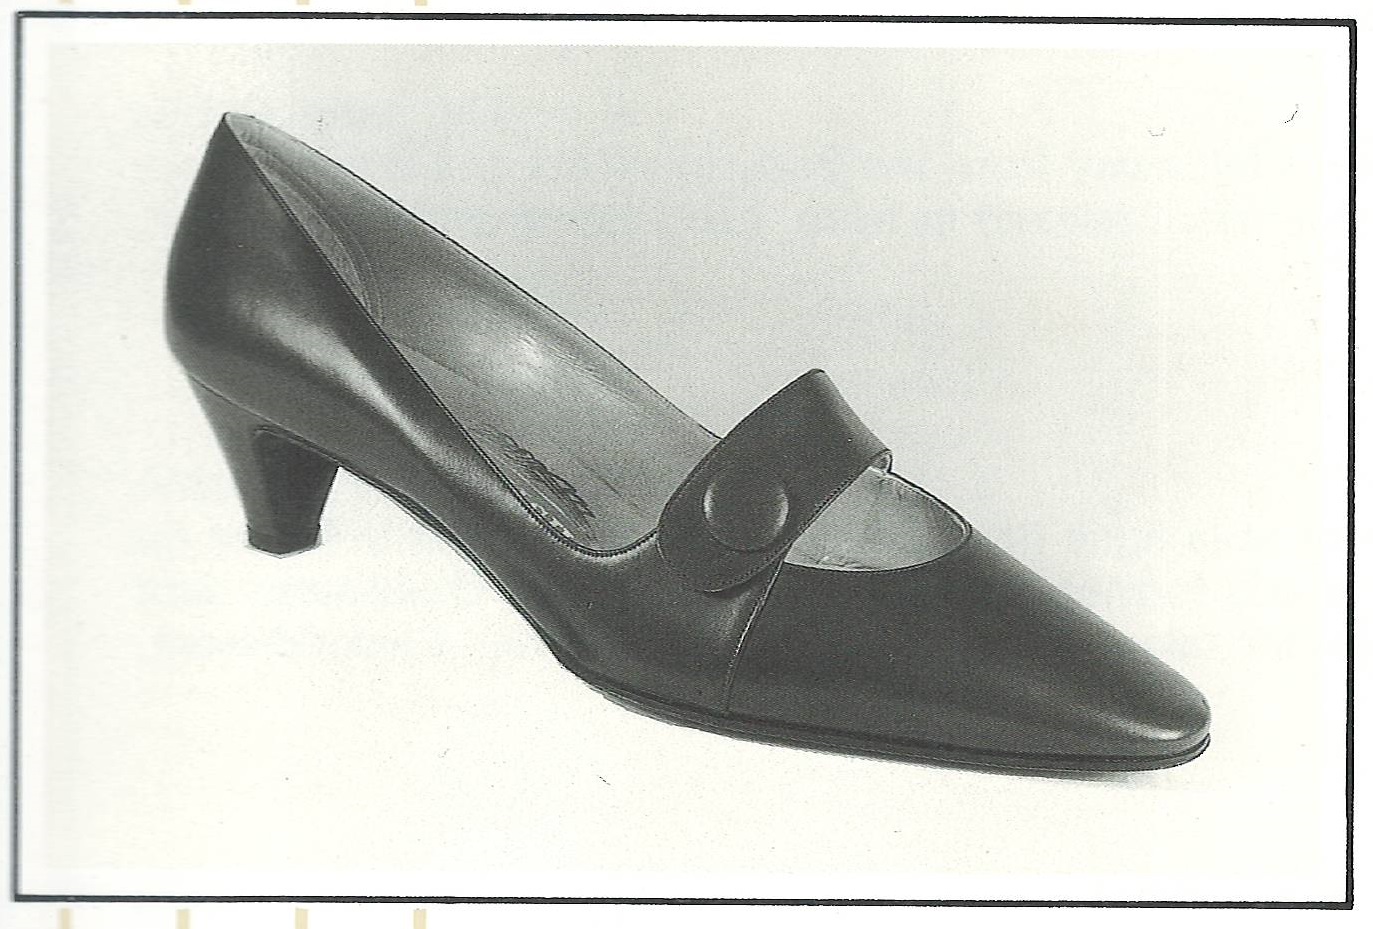 scarpe anni 50 donna